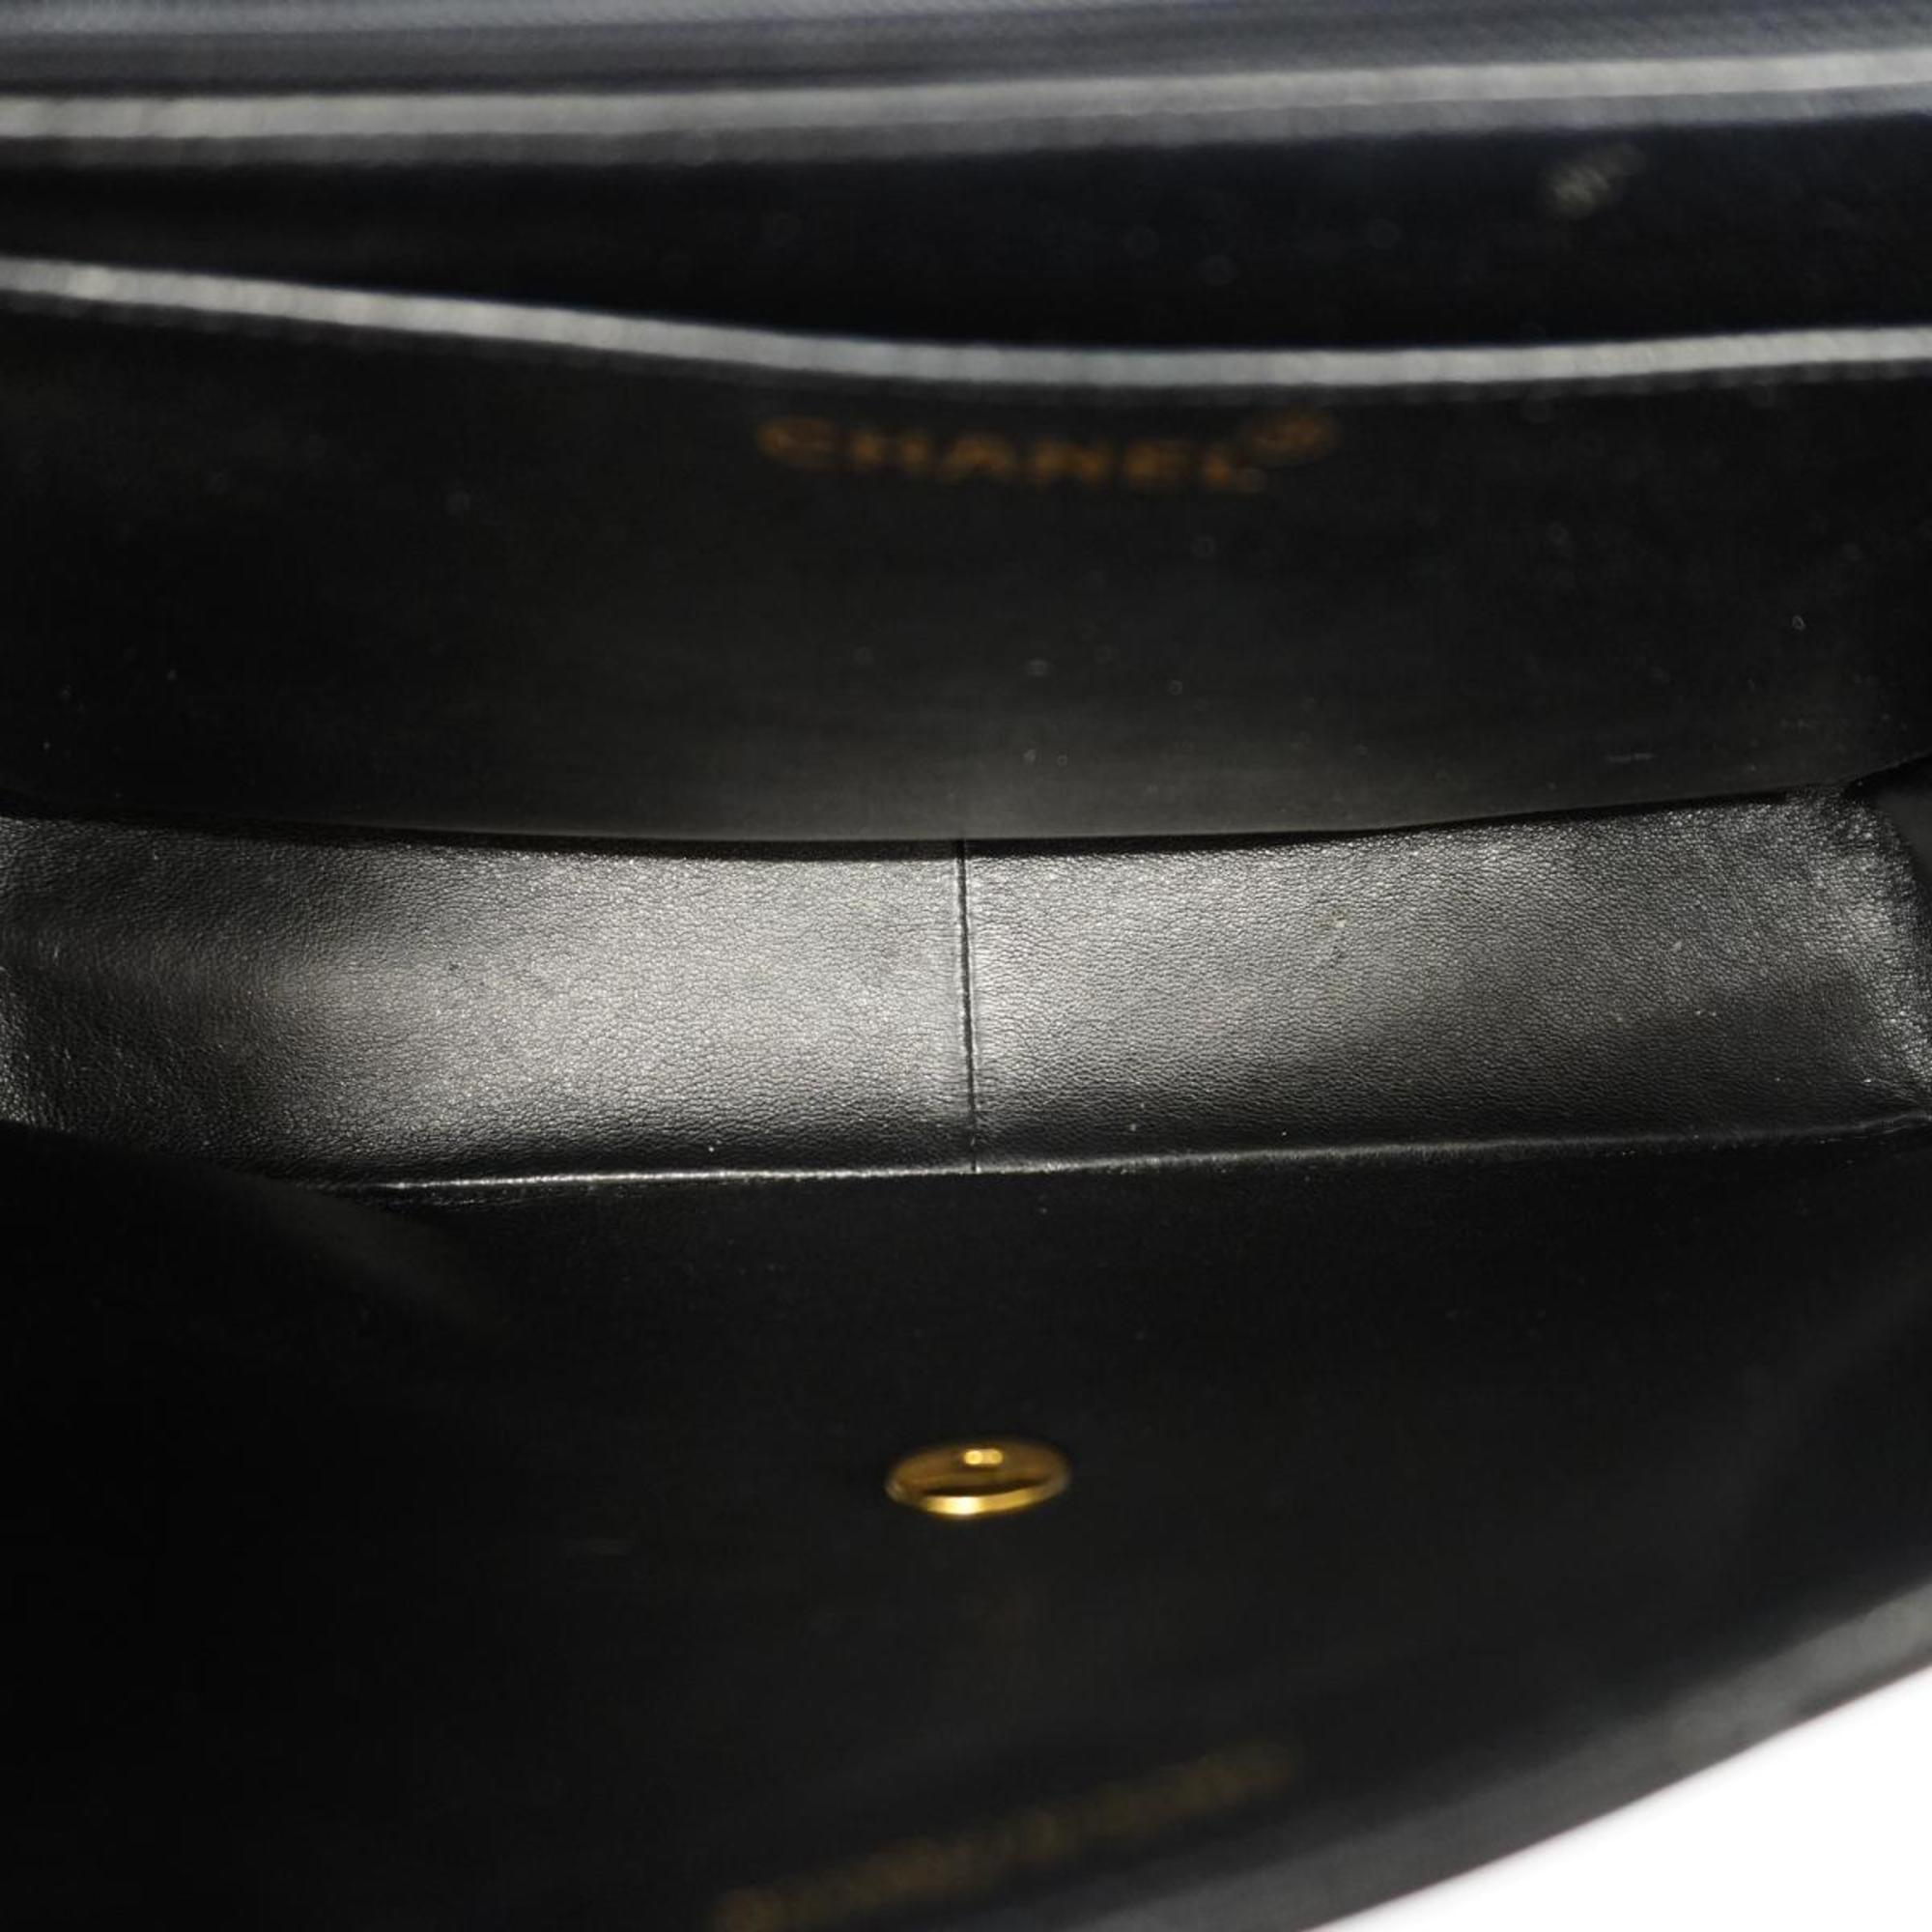 シャネル(Chanel) シャネル ショルダーバッグ マドモアゼル デカココ Wチェーン パテントレザー ブラック ネイビー   レディース